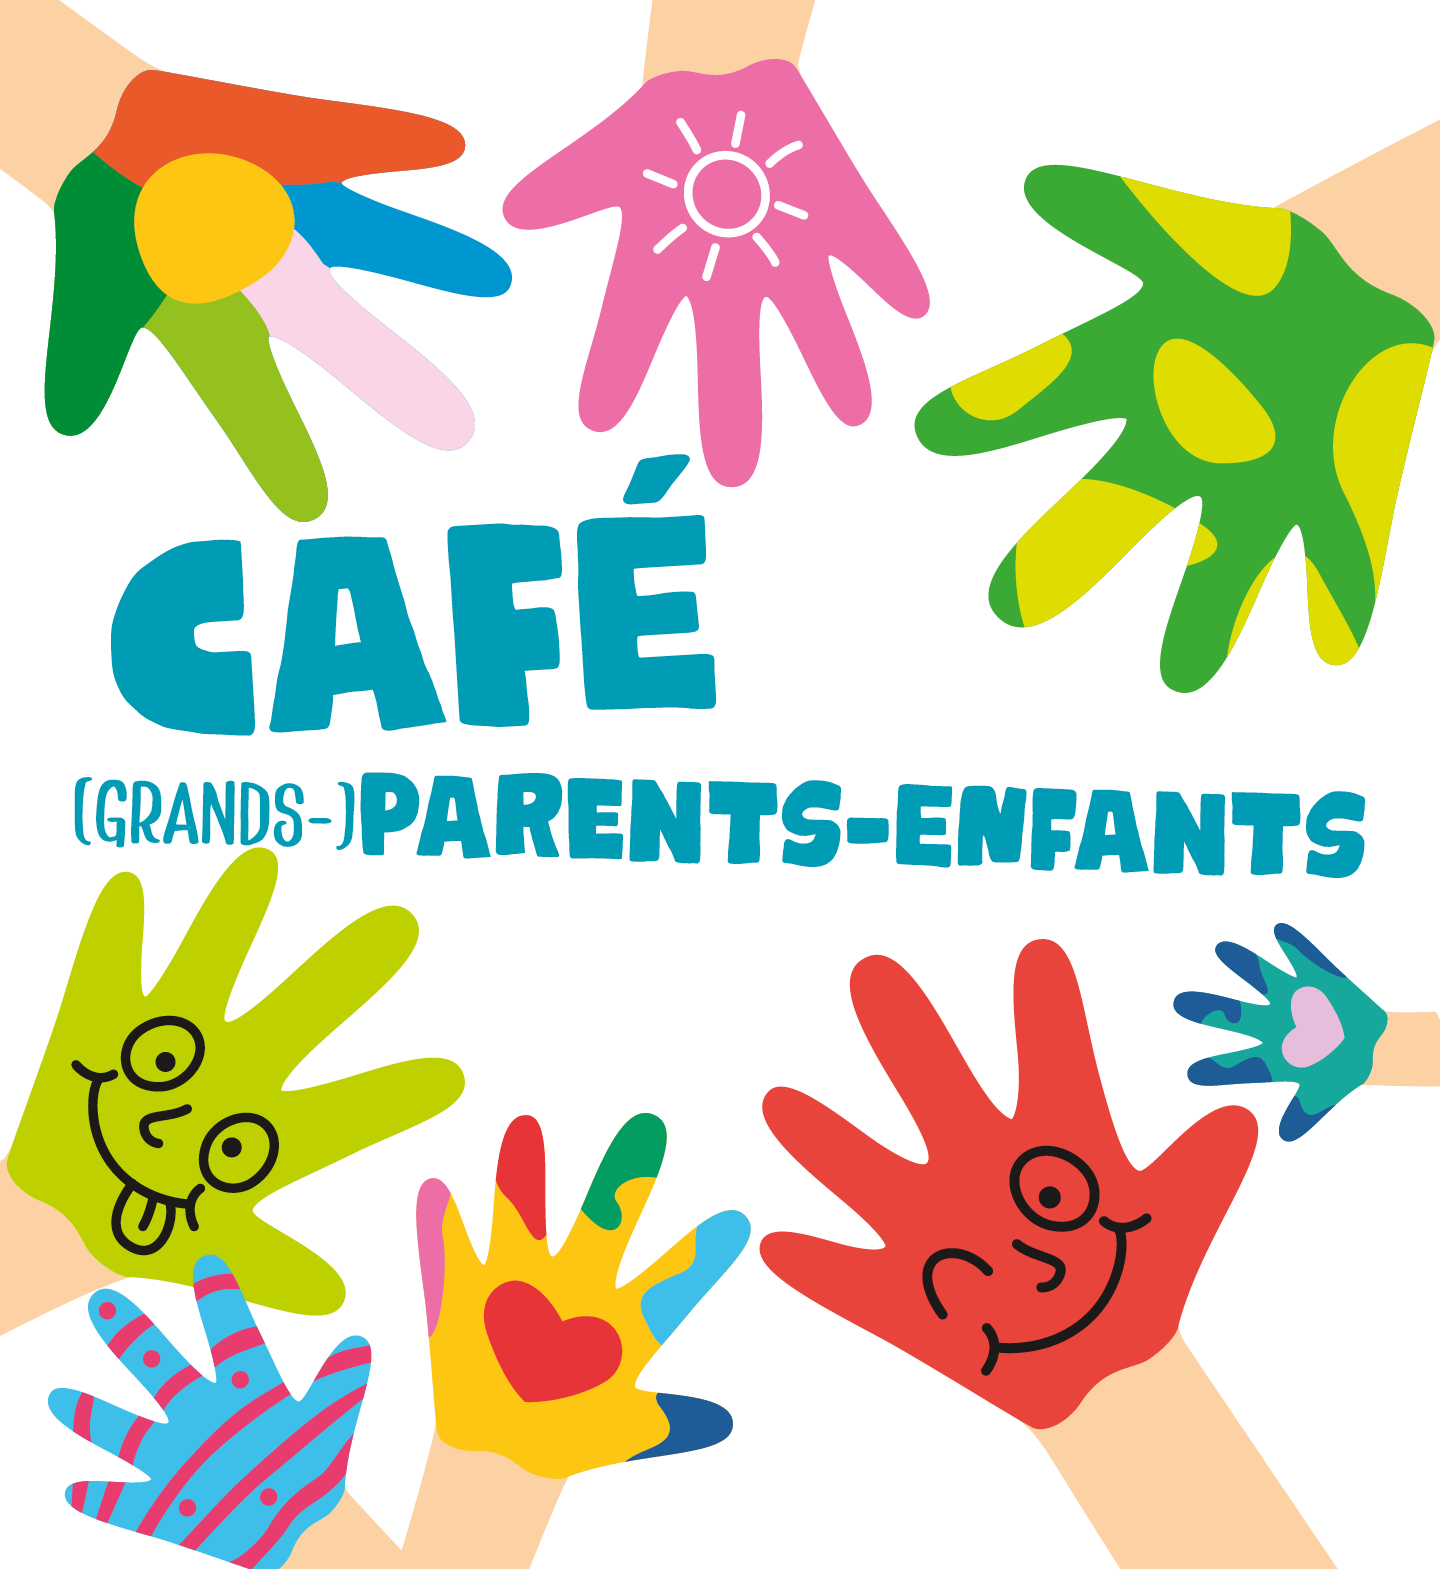 Café parents-enfants